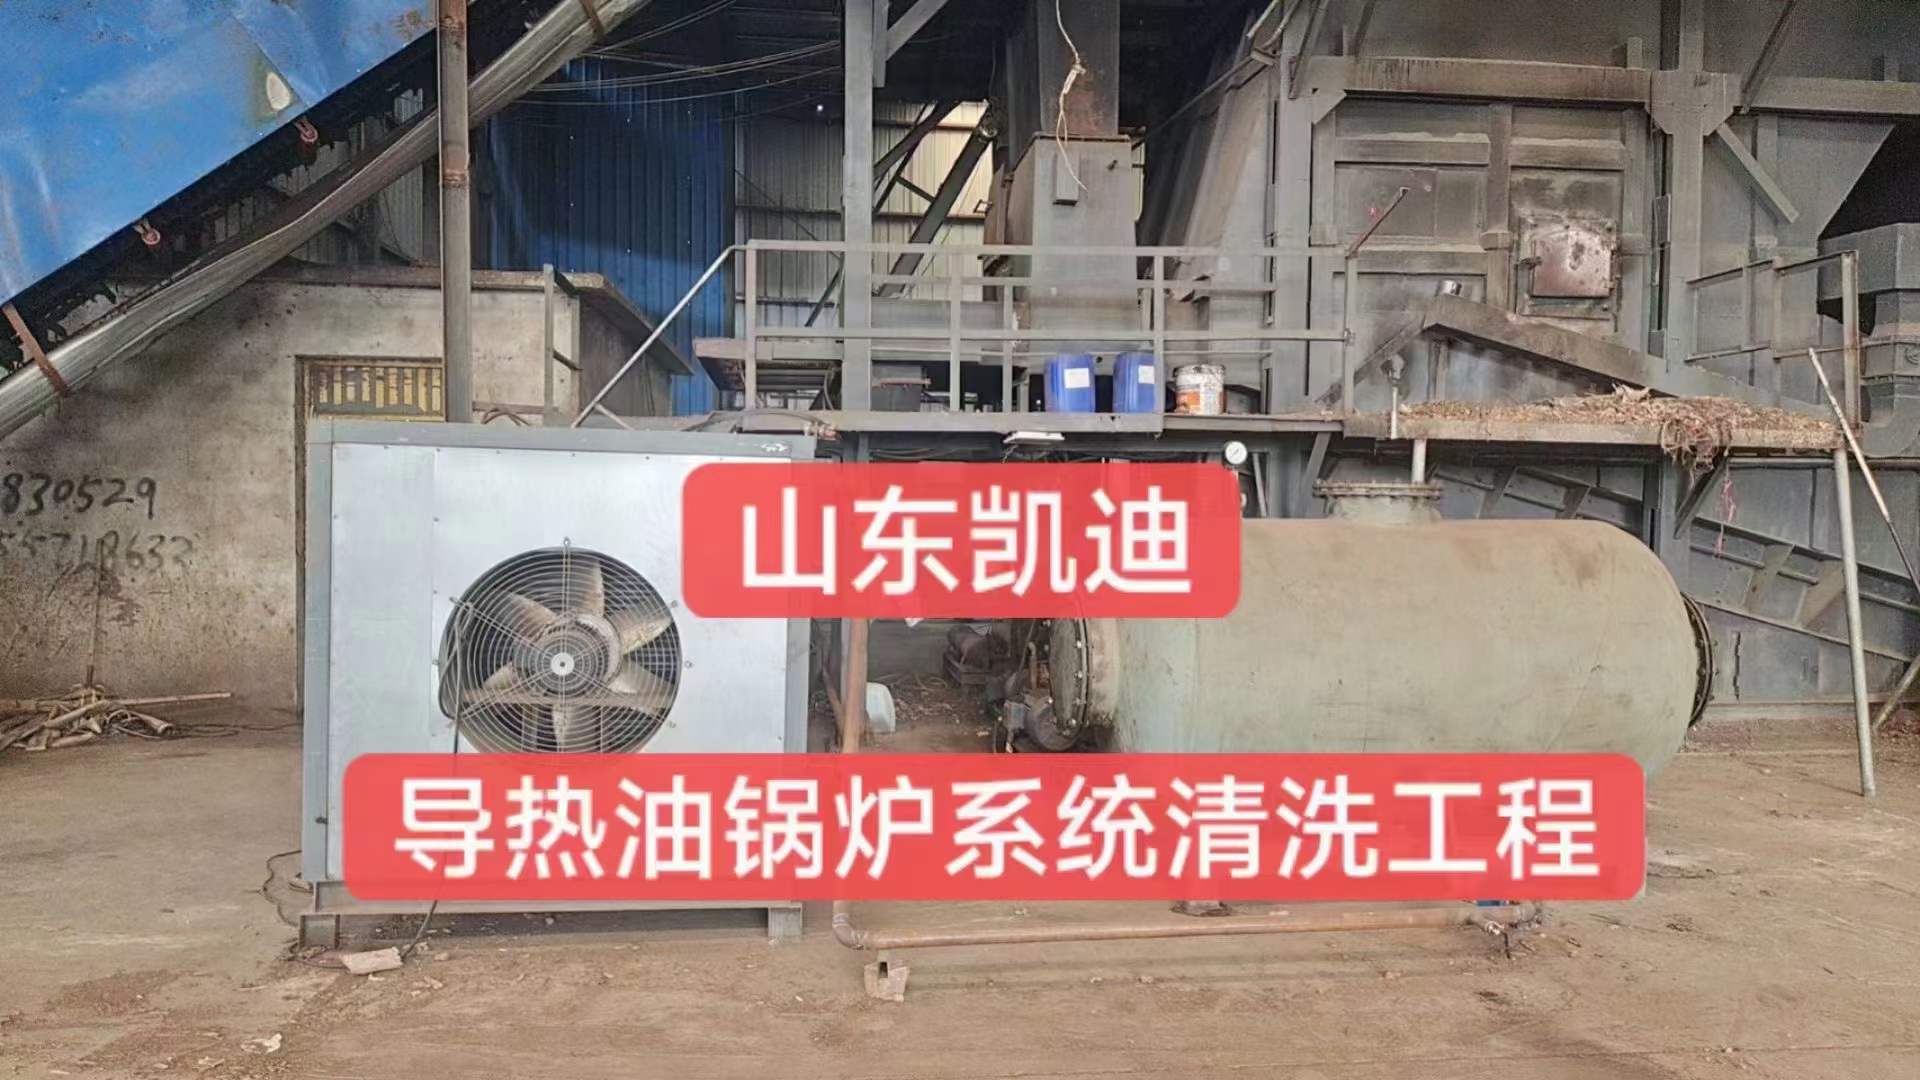 2023年9月7日安徽木業公司導熱油鍋爐系統整體清洗過濾工程結束